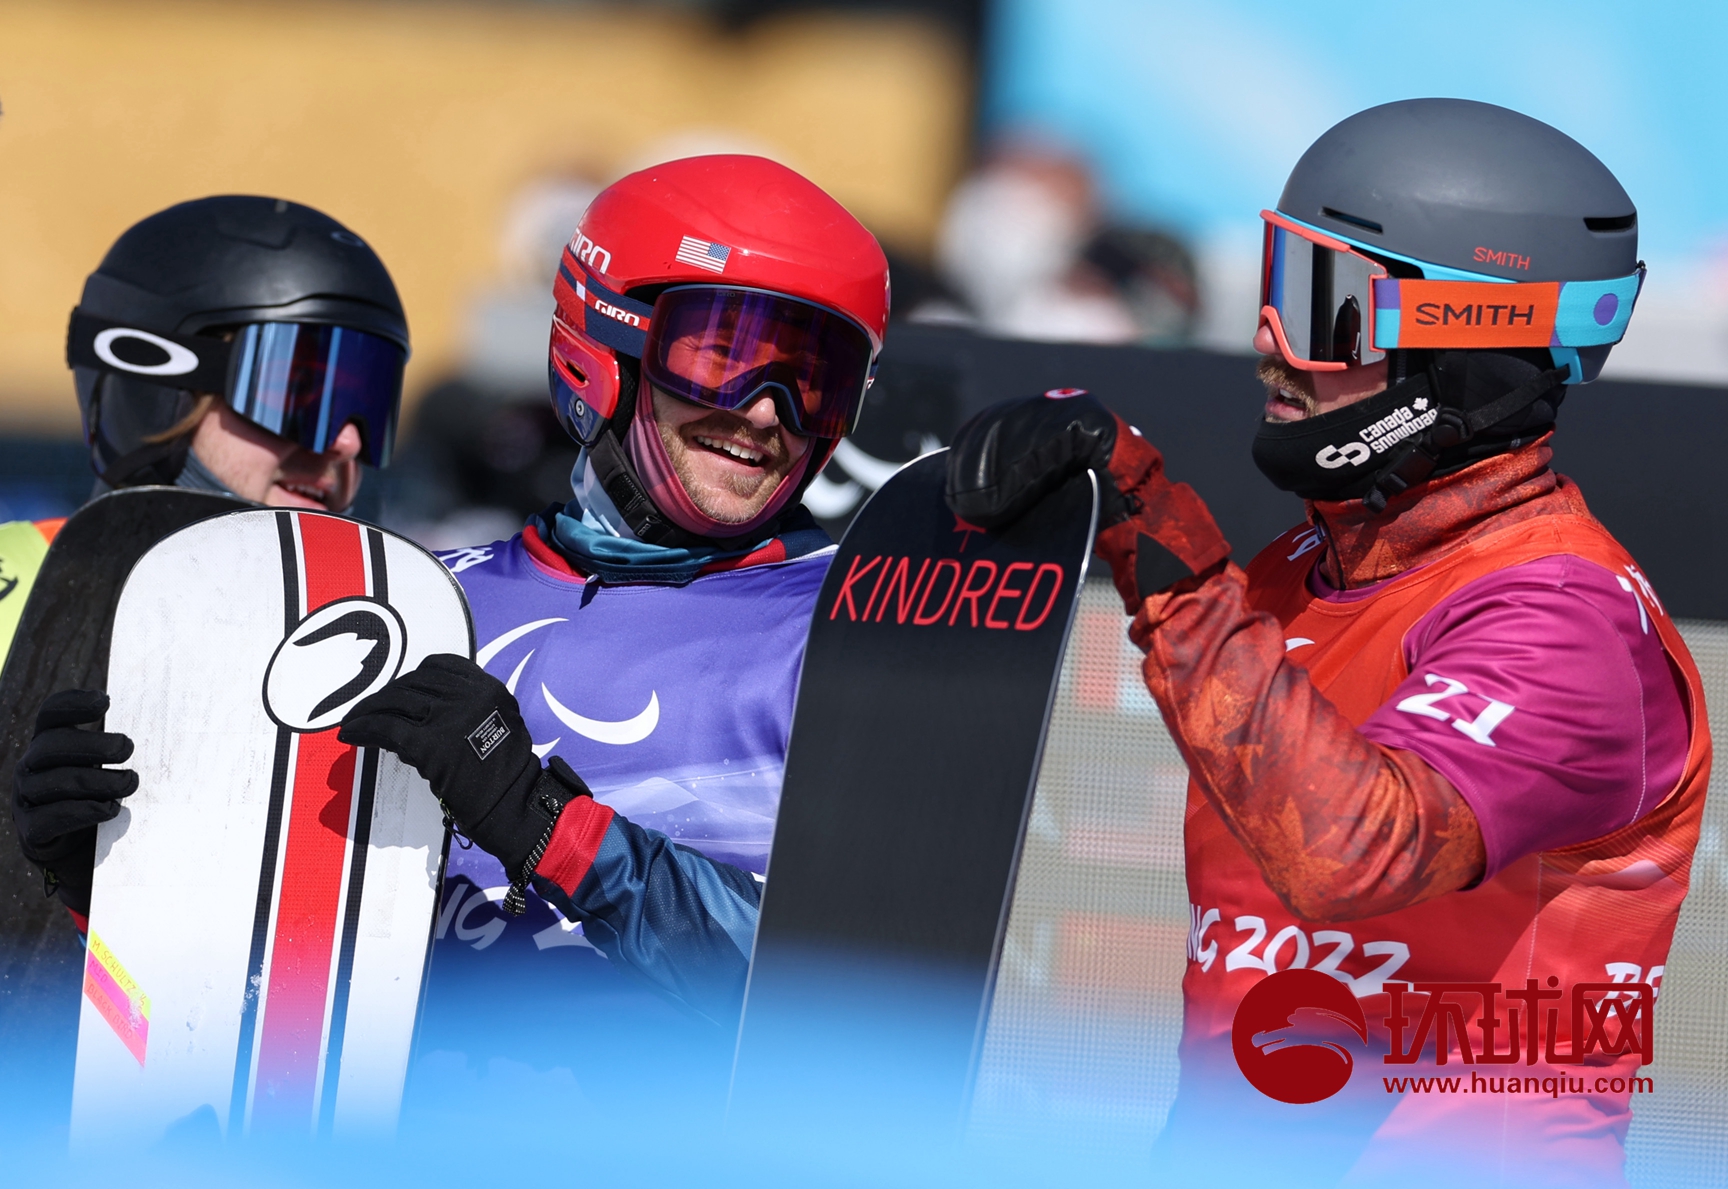 北京冬残奥会残奥单板滑雪比赛项目举行,共产生8枚金牌